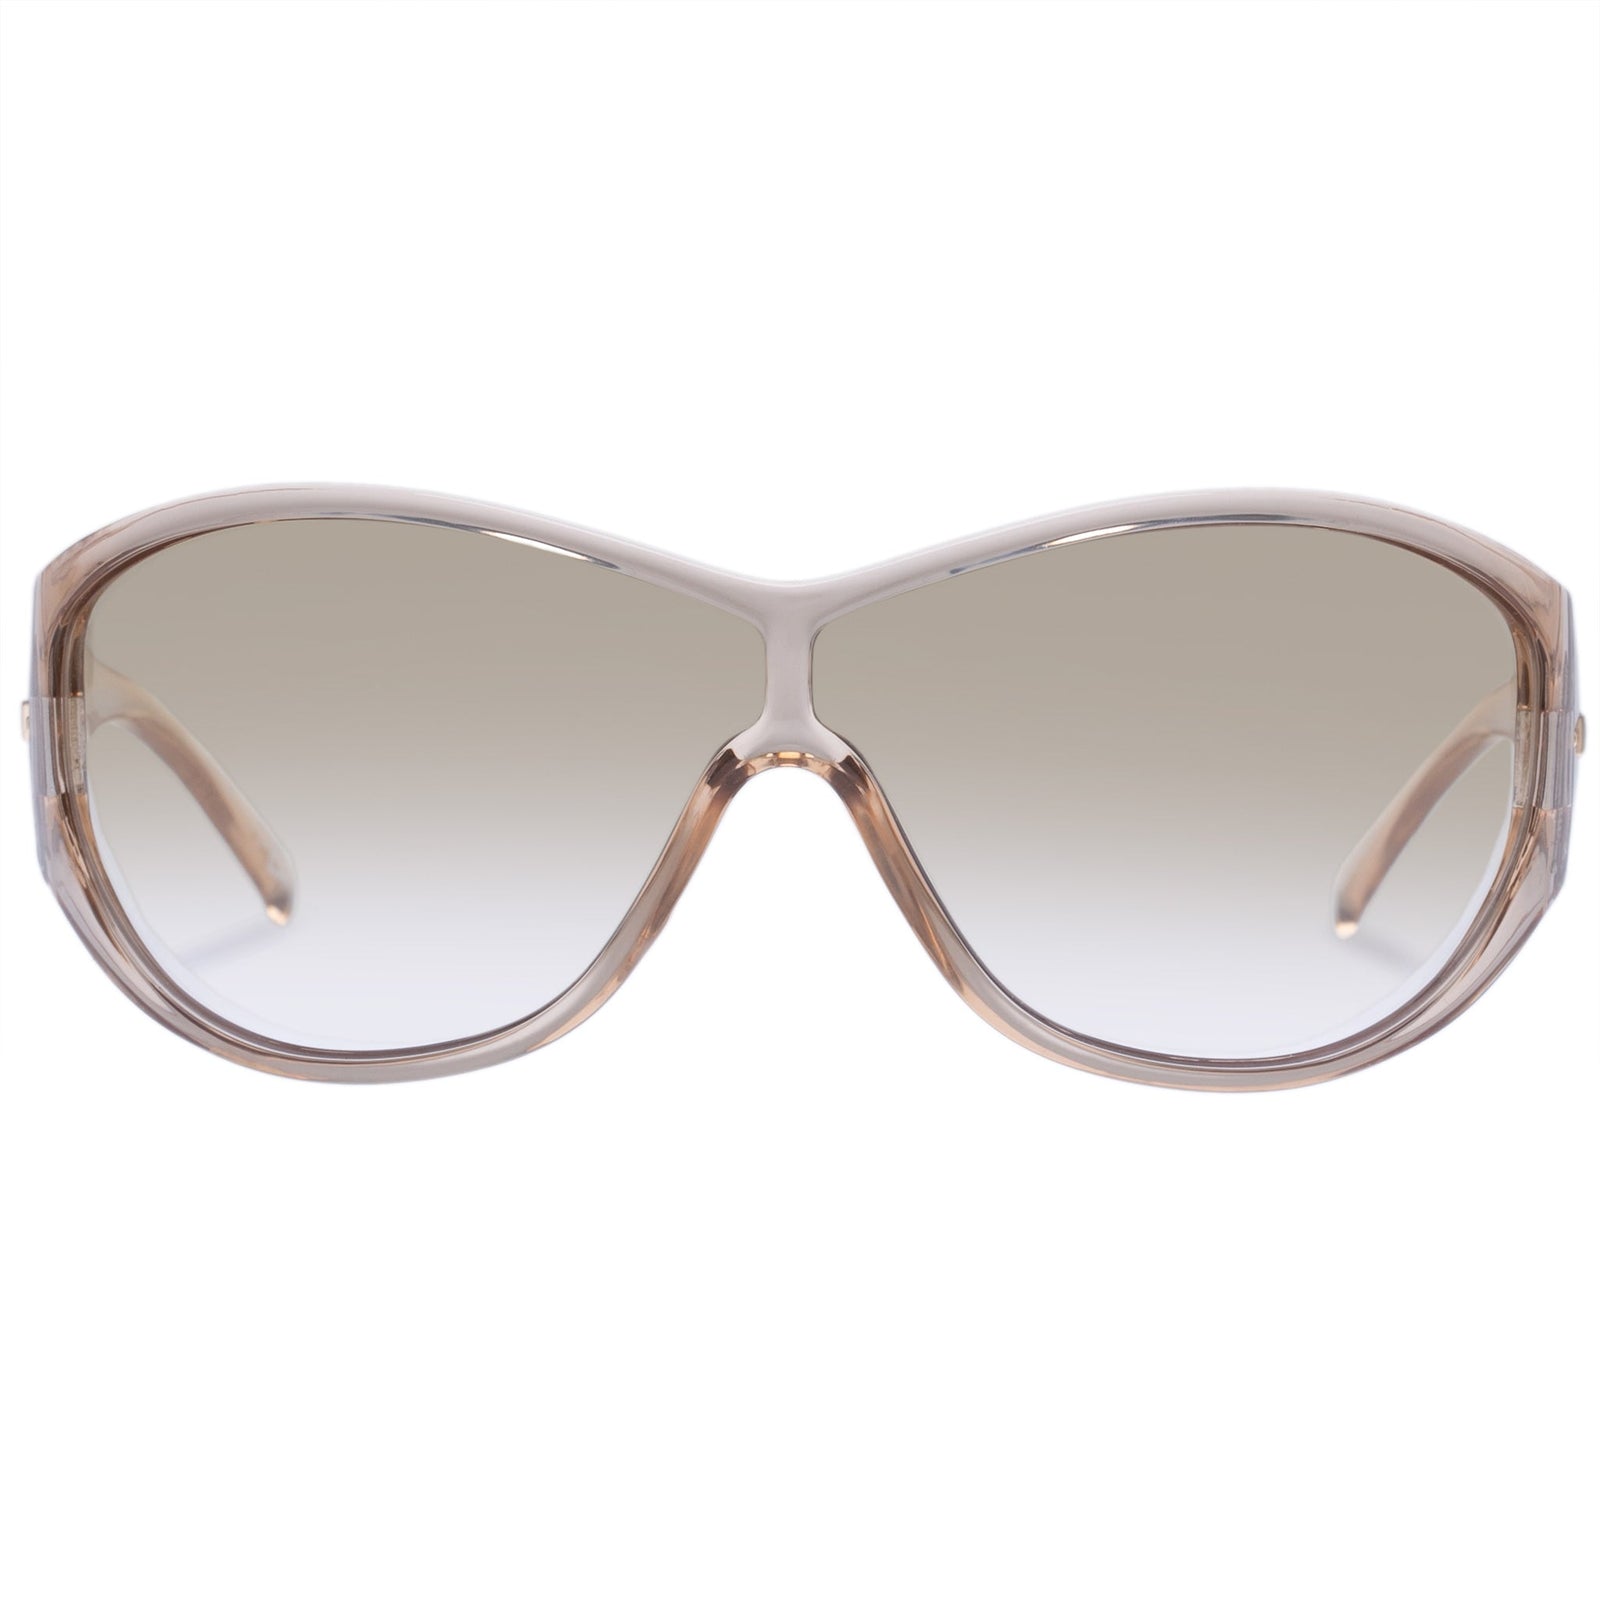 Le Specs - Polarity, Square Sunglasses, Sand